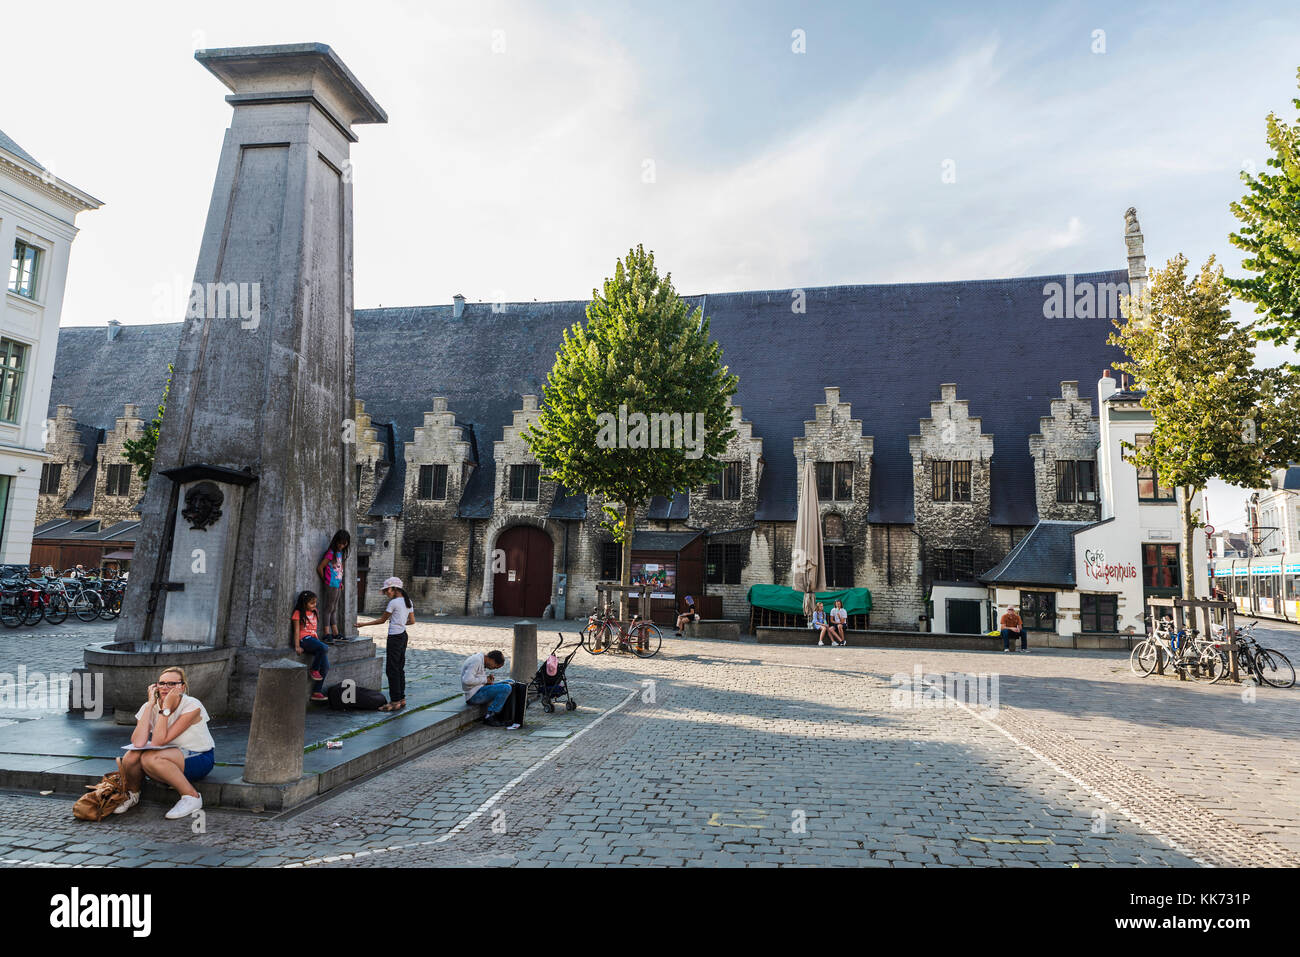 Ghent, Belgio - 28 agosto 2017: piazza del mercato di carne con una fontana e la gente in giro per la città vecchia del villaggio medievale di Gand, belgiu Foto Stock